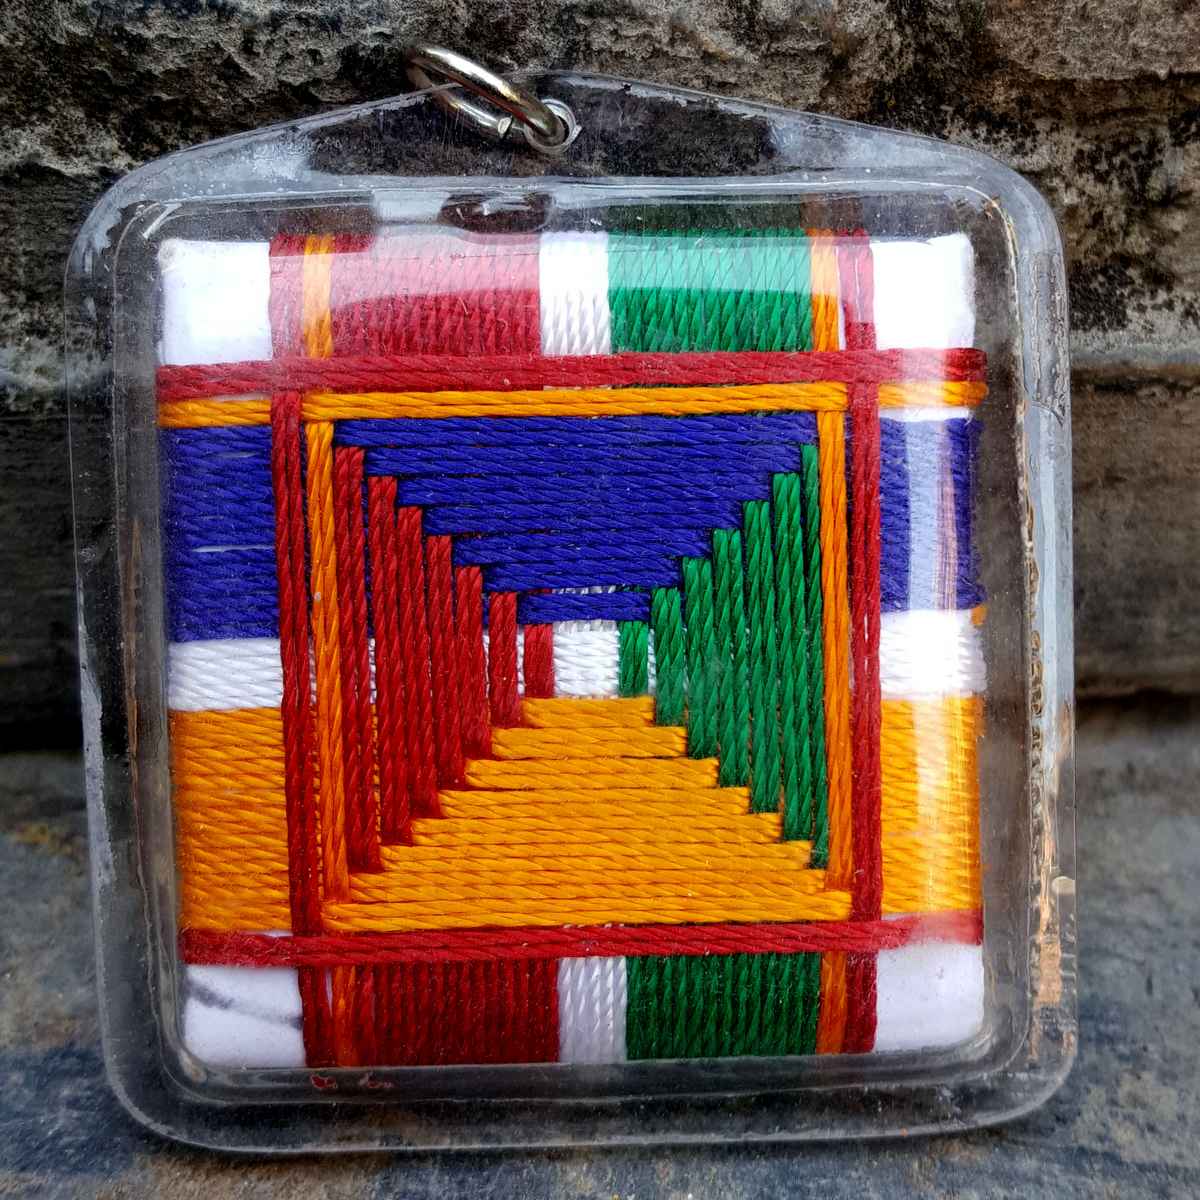 Chenrezig - Tibetan Mantra Amulet With Hard Plastic Coat